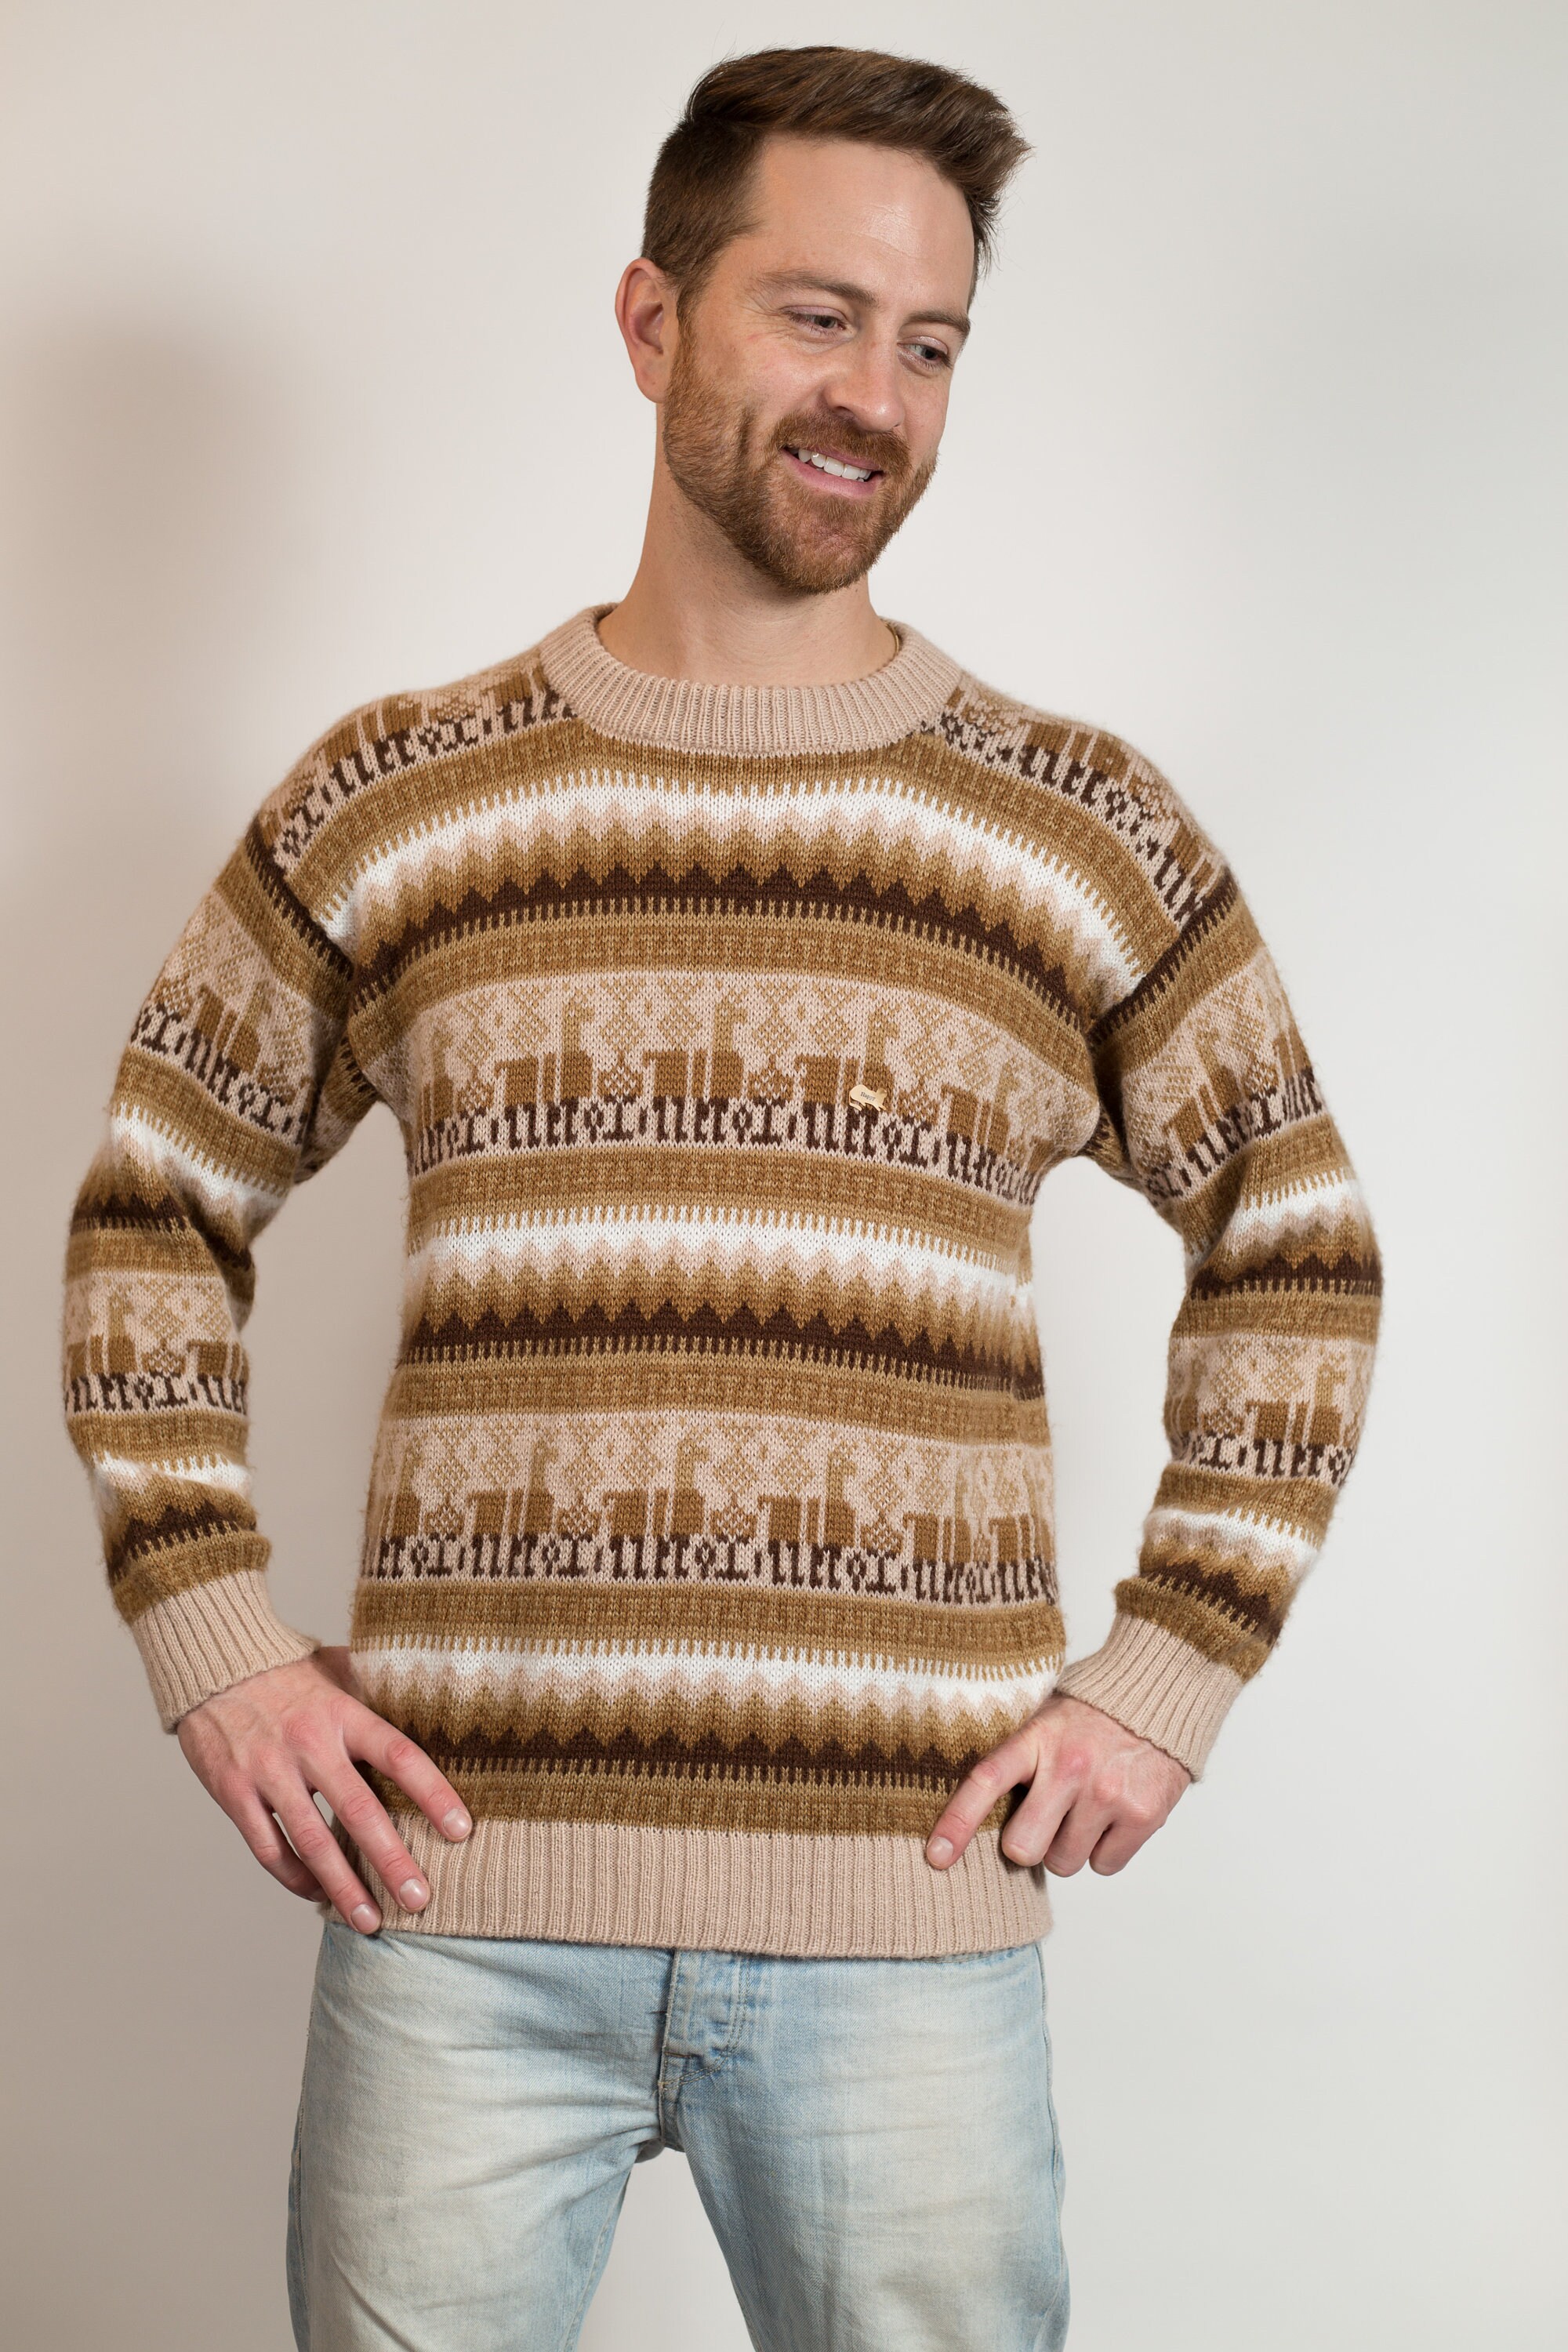 Undvigende maskine Grundlæggende teori Vintage Knit Sweater Men's Medium Size Tan and Brown | Etsy Denmark